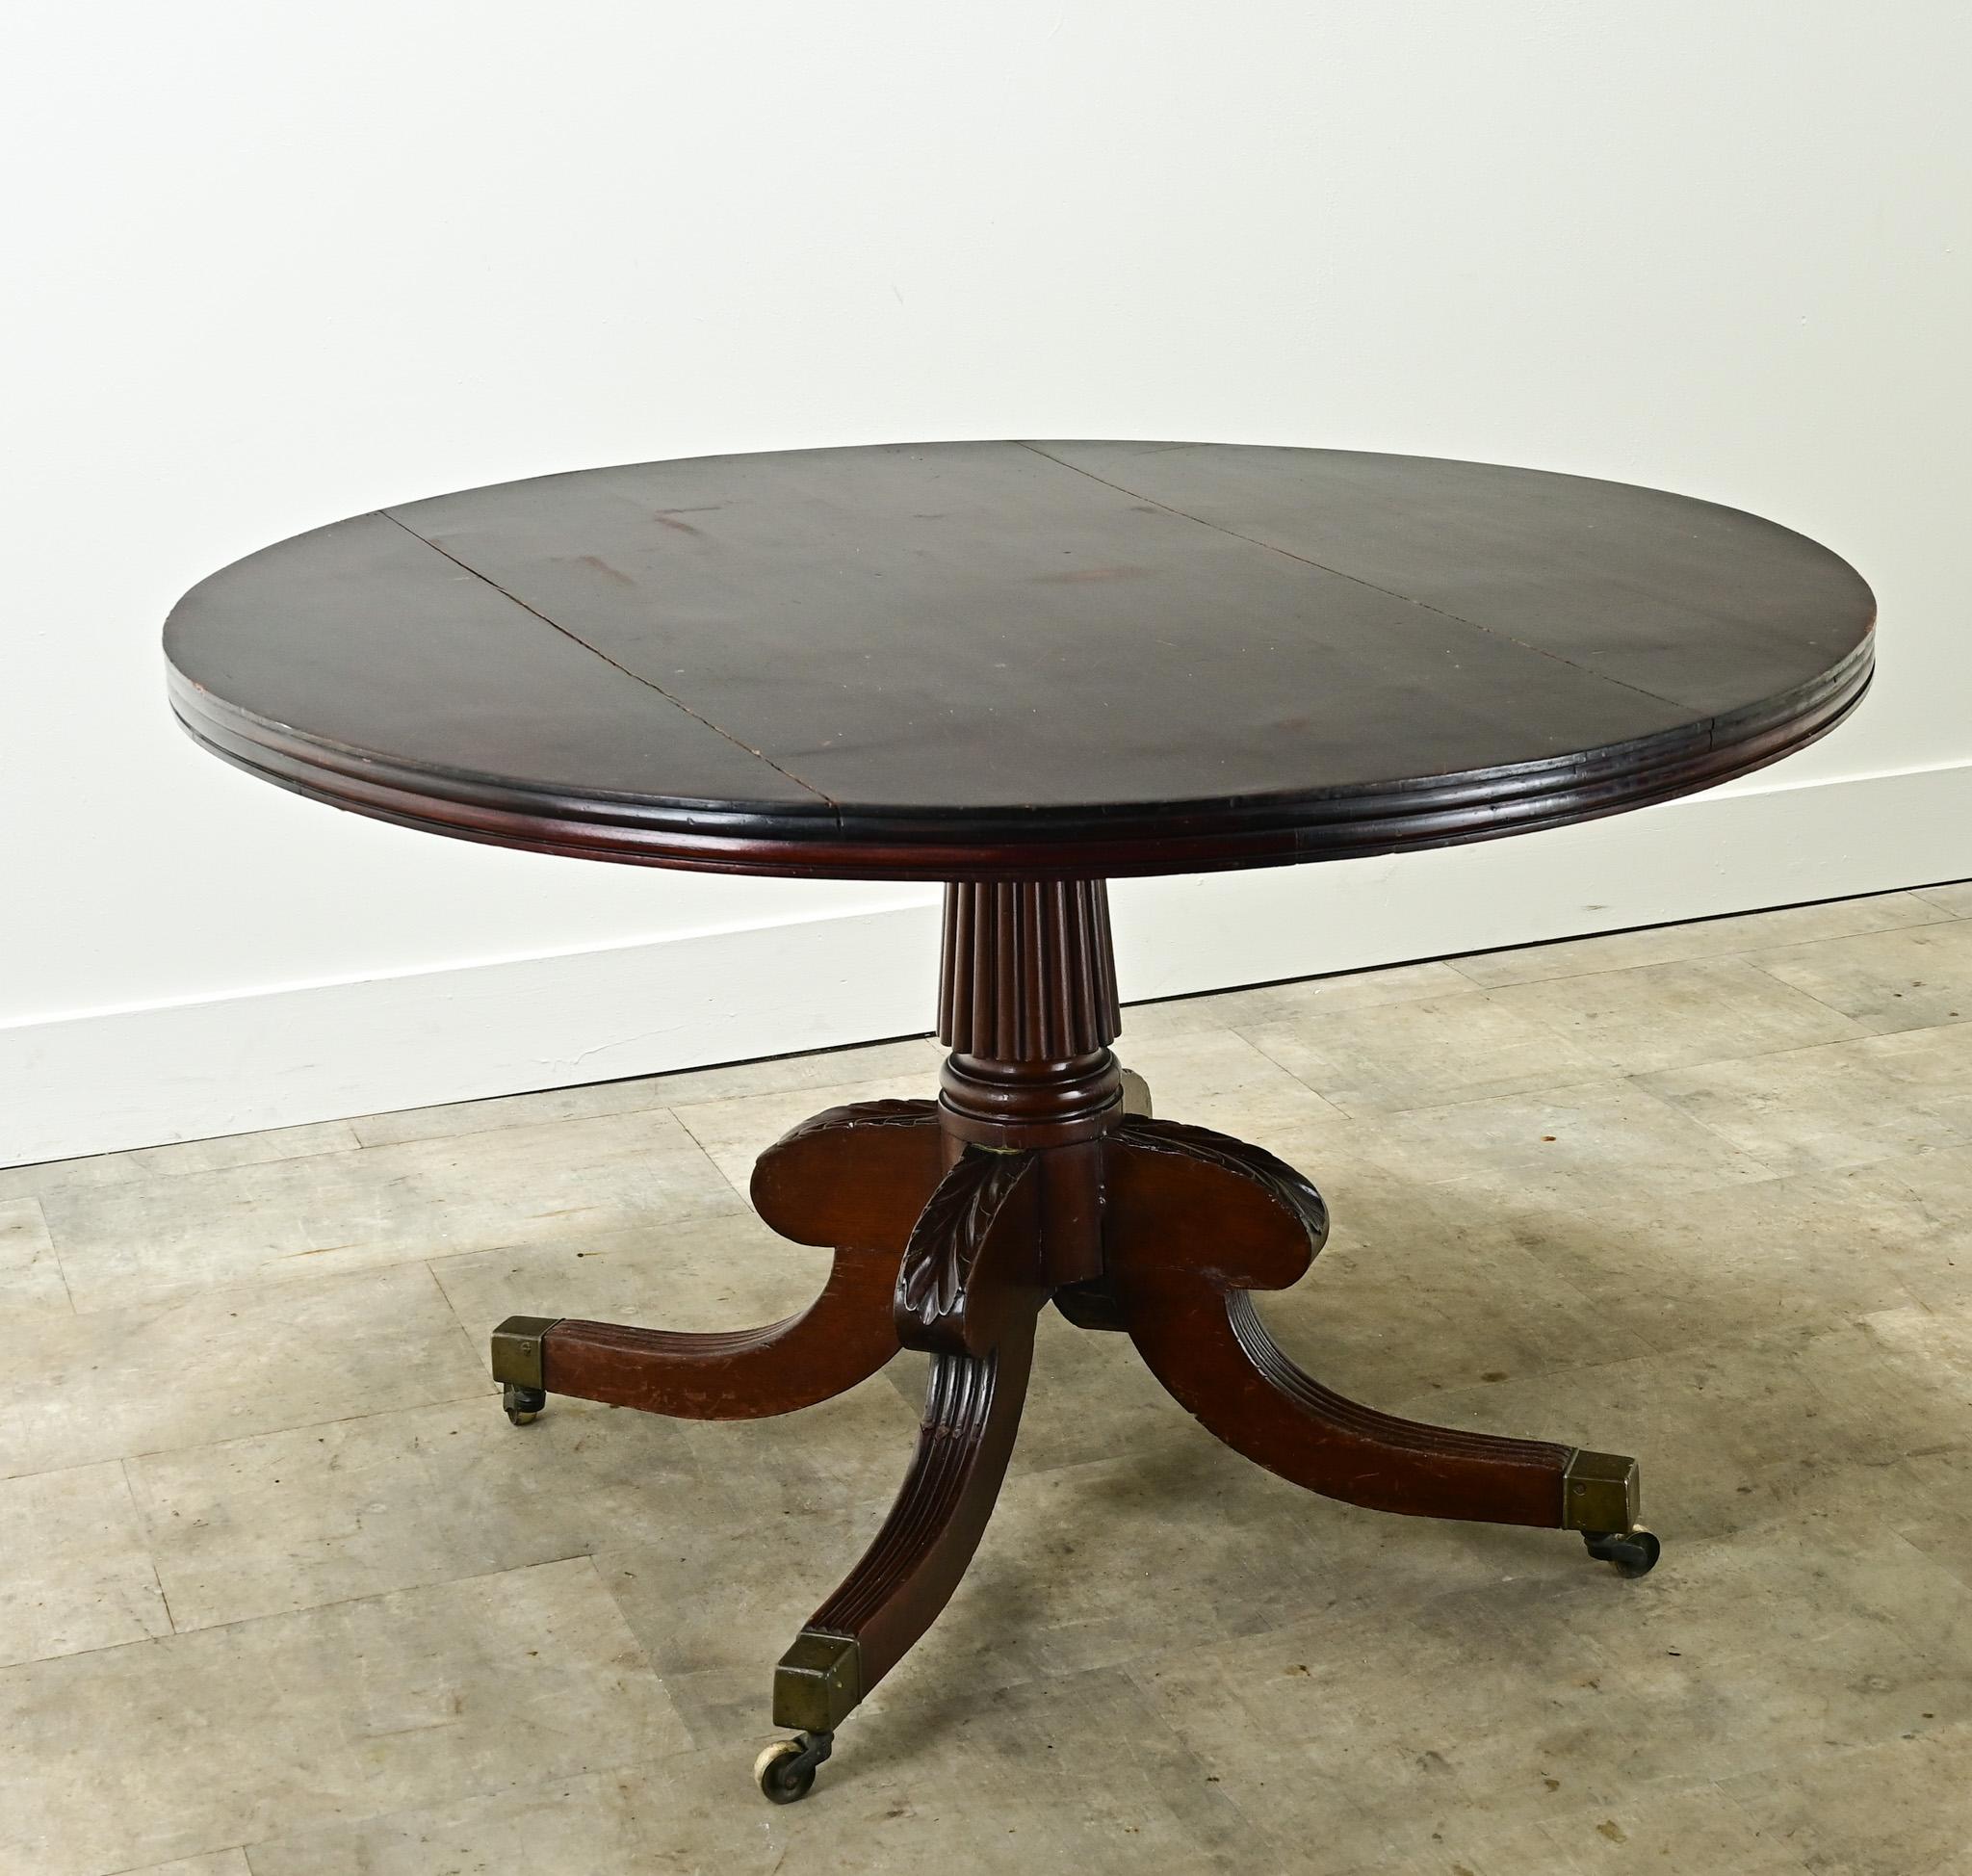 La table ronde idéale pour accueillir confortablement quatre personnes. Cette table hollandaise à plateau basculant est fabriquée en acajou et a la capacité de basculer vers le haut. La base du piédestal a un style central cannelé avec quatre pieds